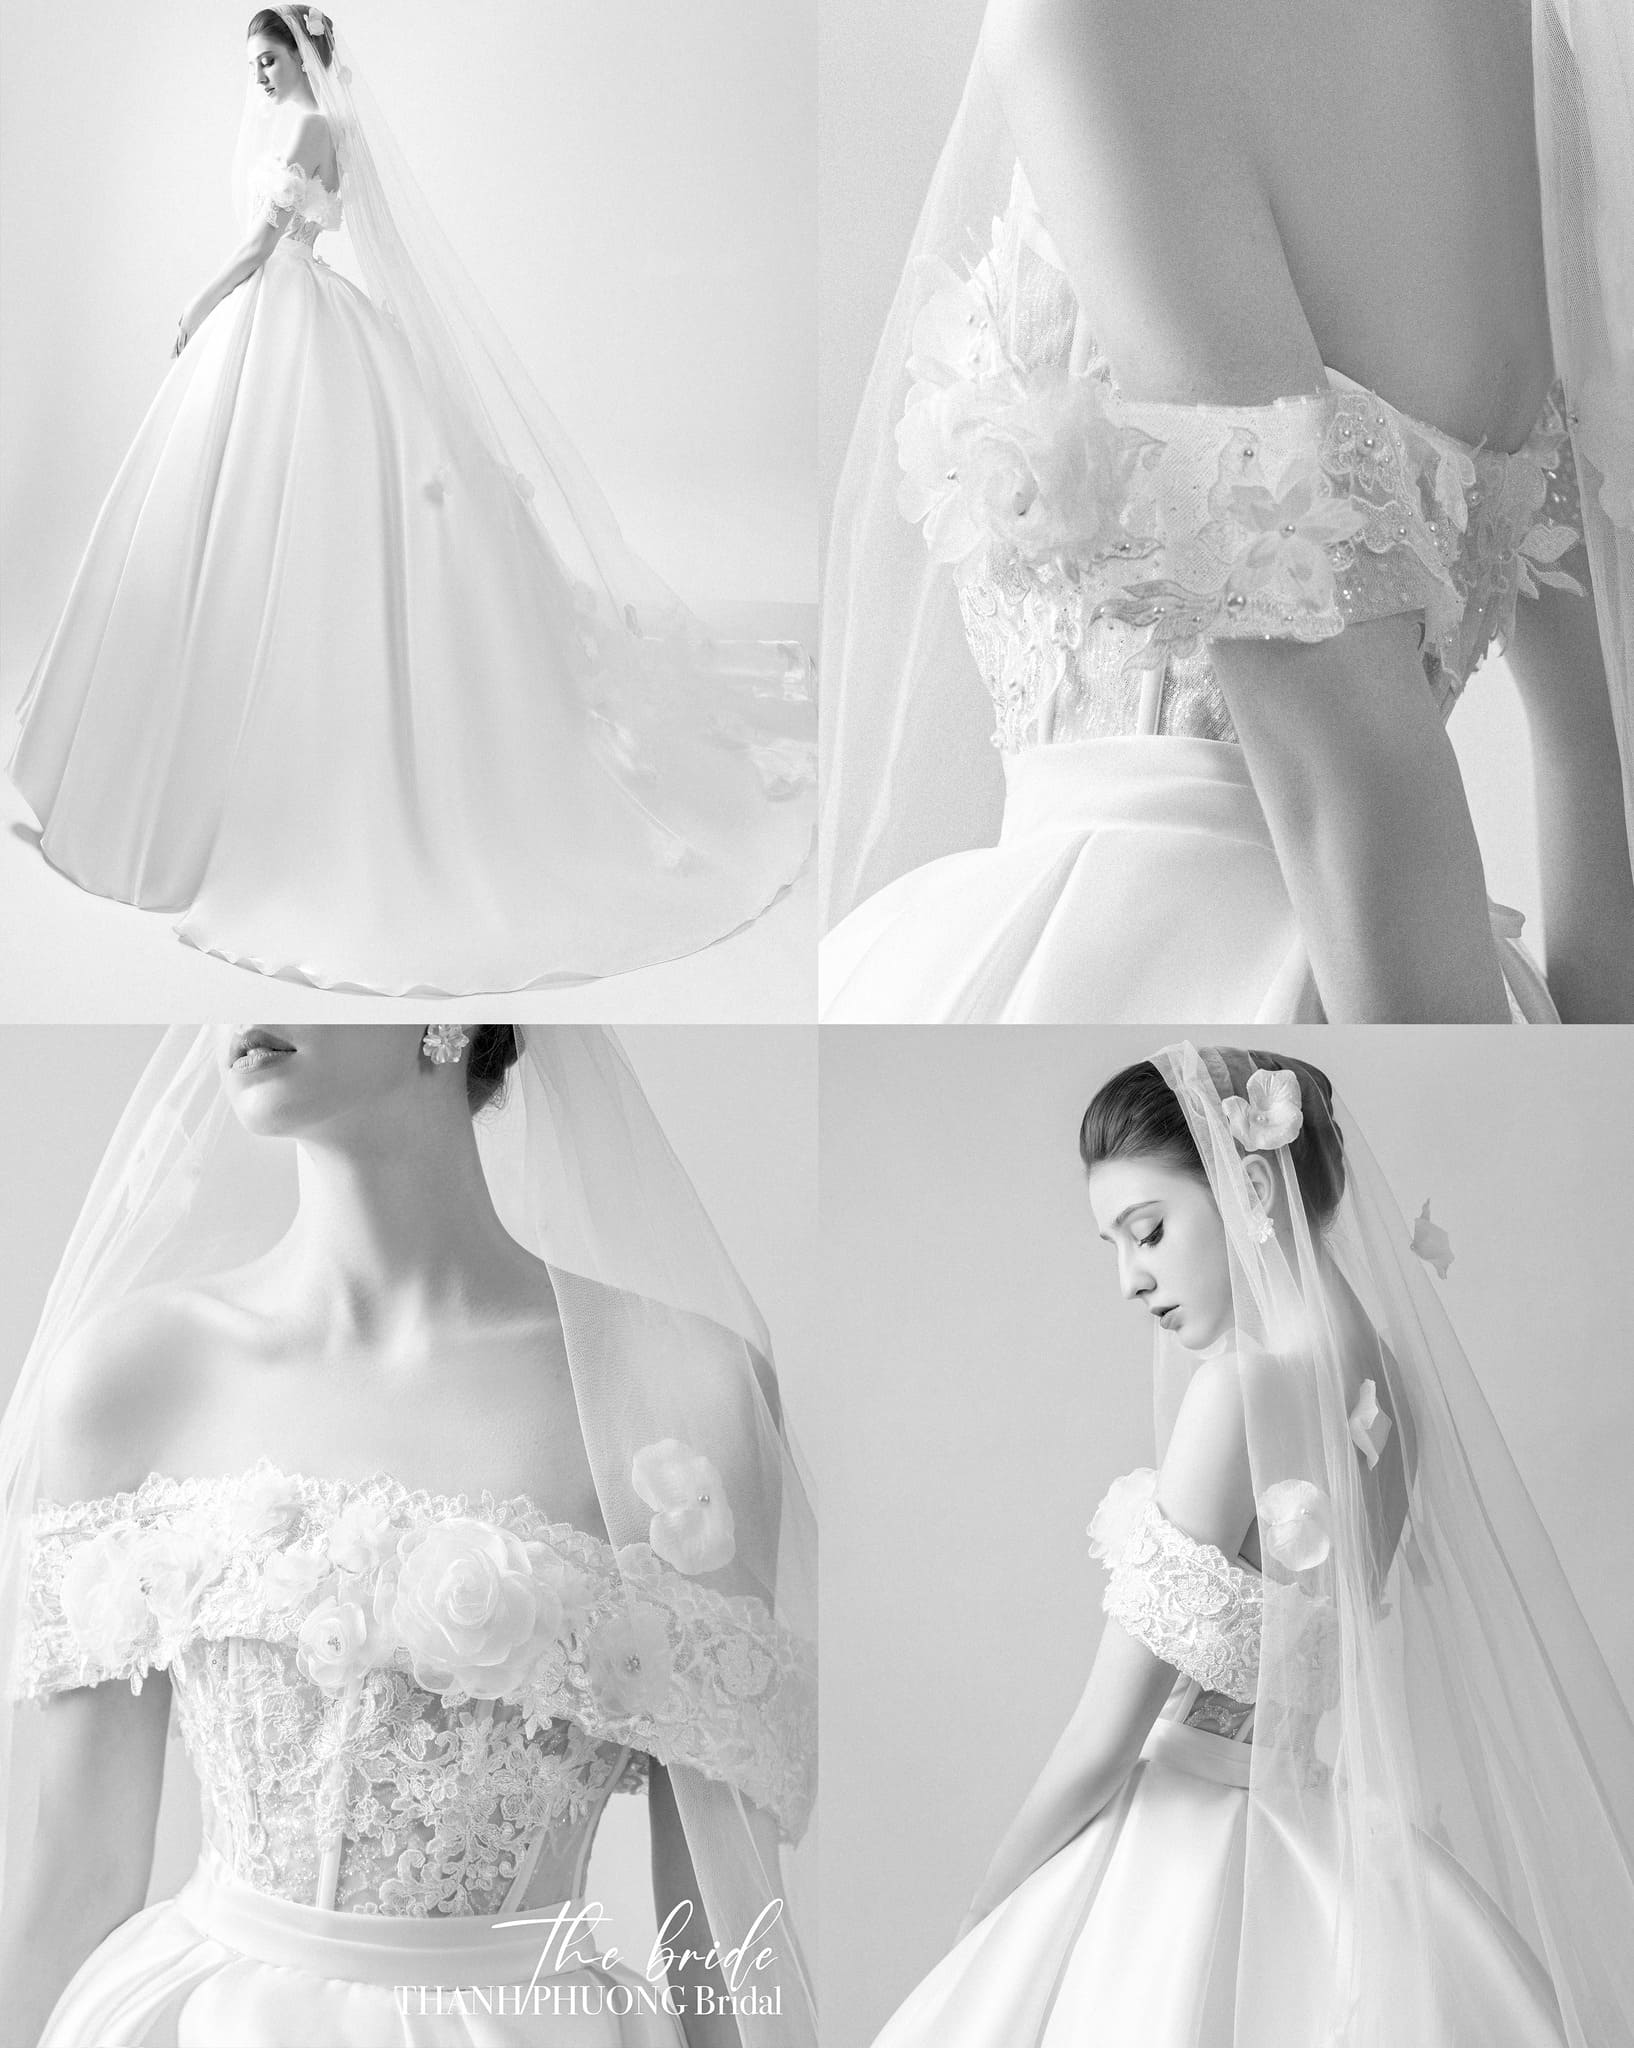 Le Thanh Phuong Bridal Studio cho thuê váy cưới đẹp nhất ở quận Bình Thạnh